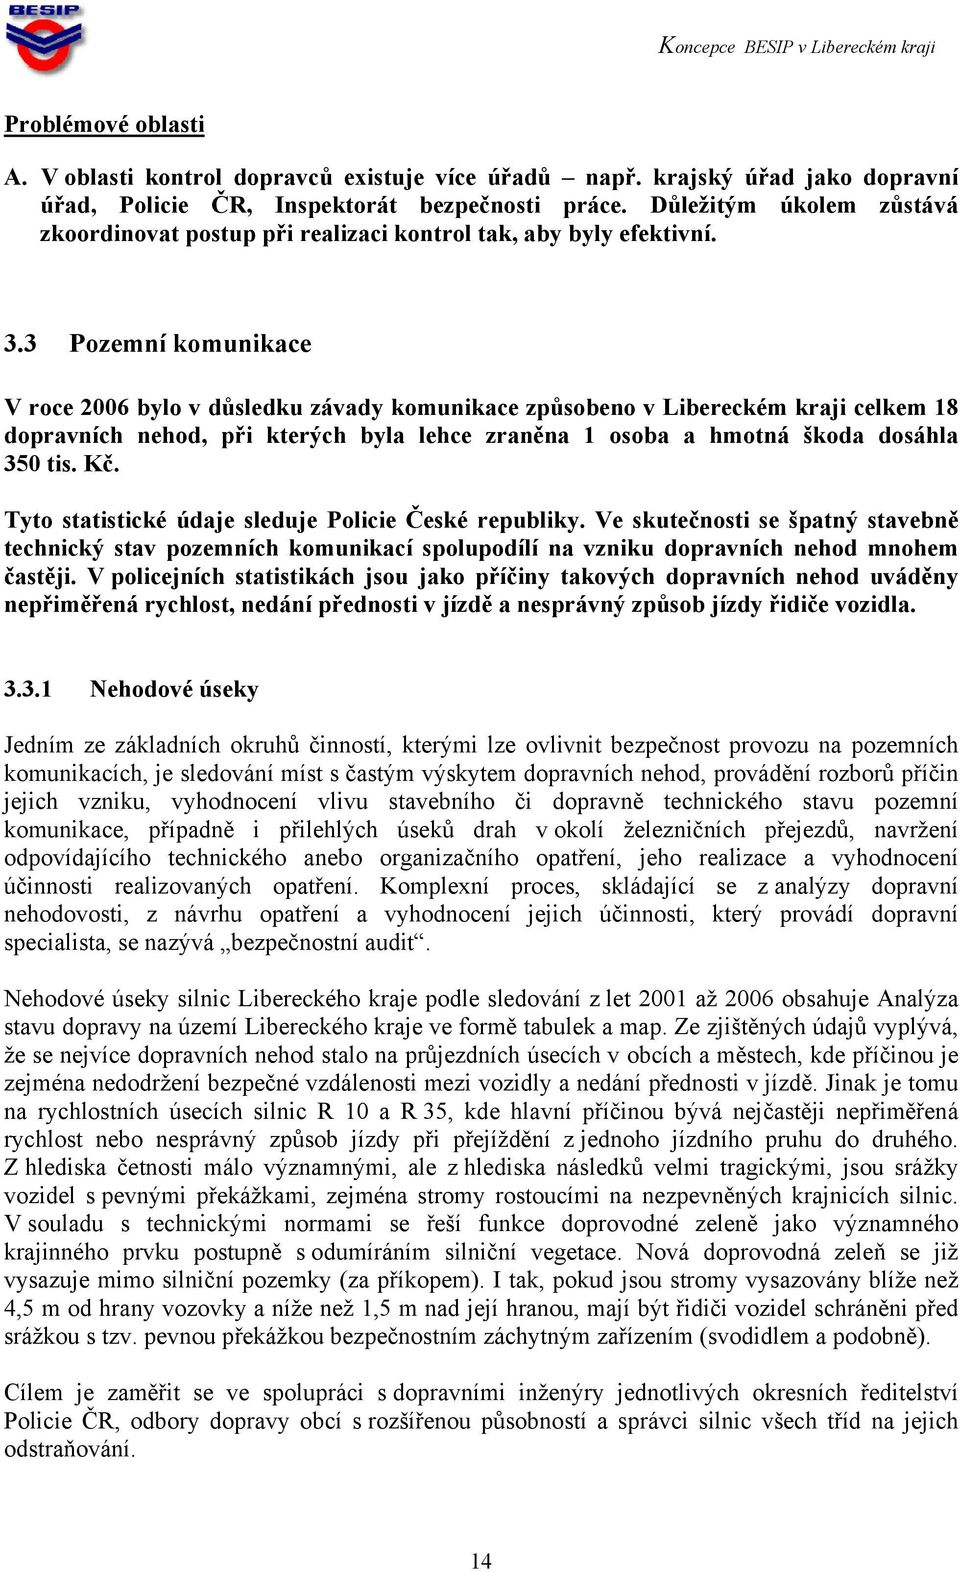 3 Pozemní komunikace V roce 2006 bylo v důsledku závady komunikace způsobeno v Libereckém kraji celkem 18 dopravních nehod, při kterých byla lehce zraněna 1 osoba a hmotná škoda dosáhla 350 tis. Kč.